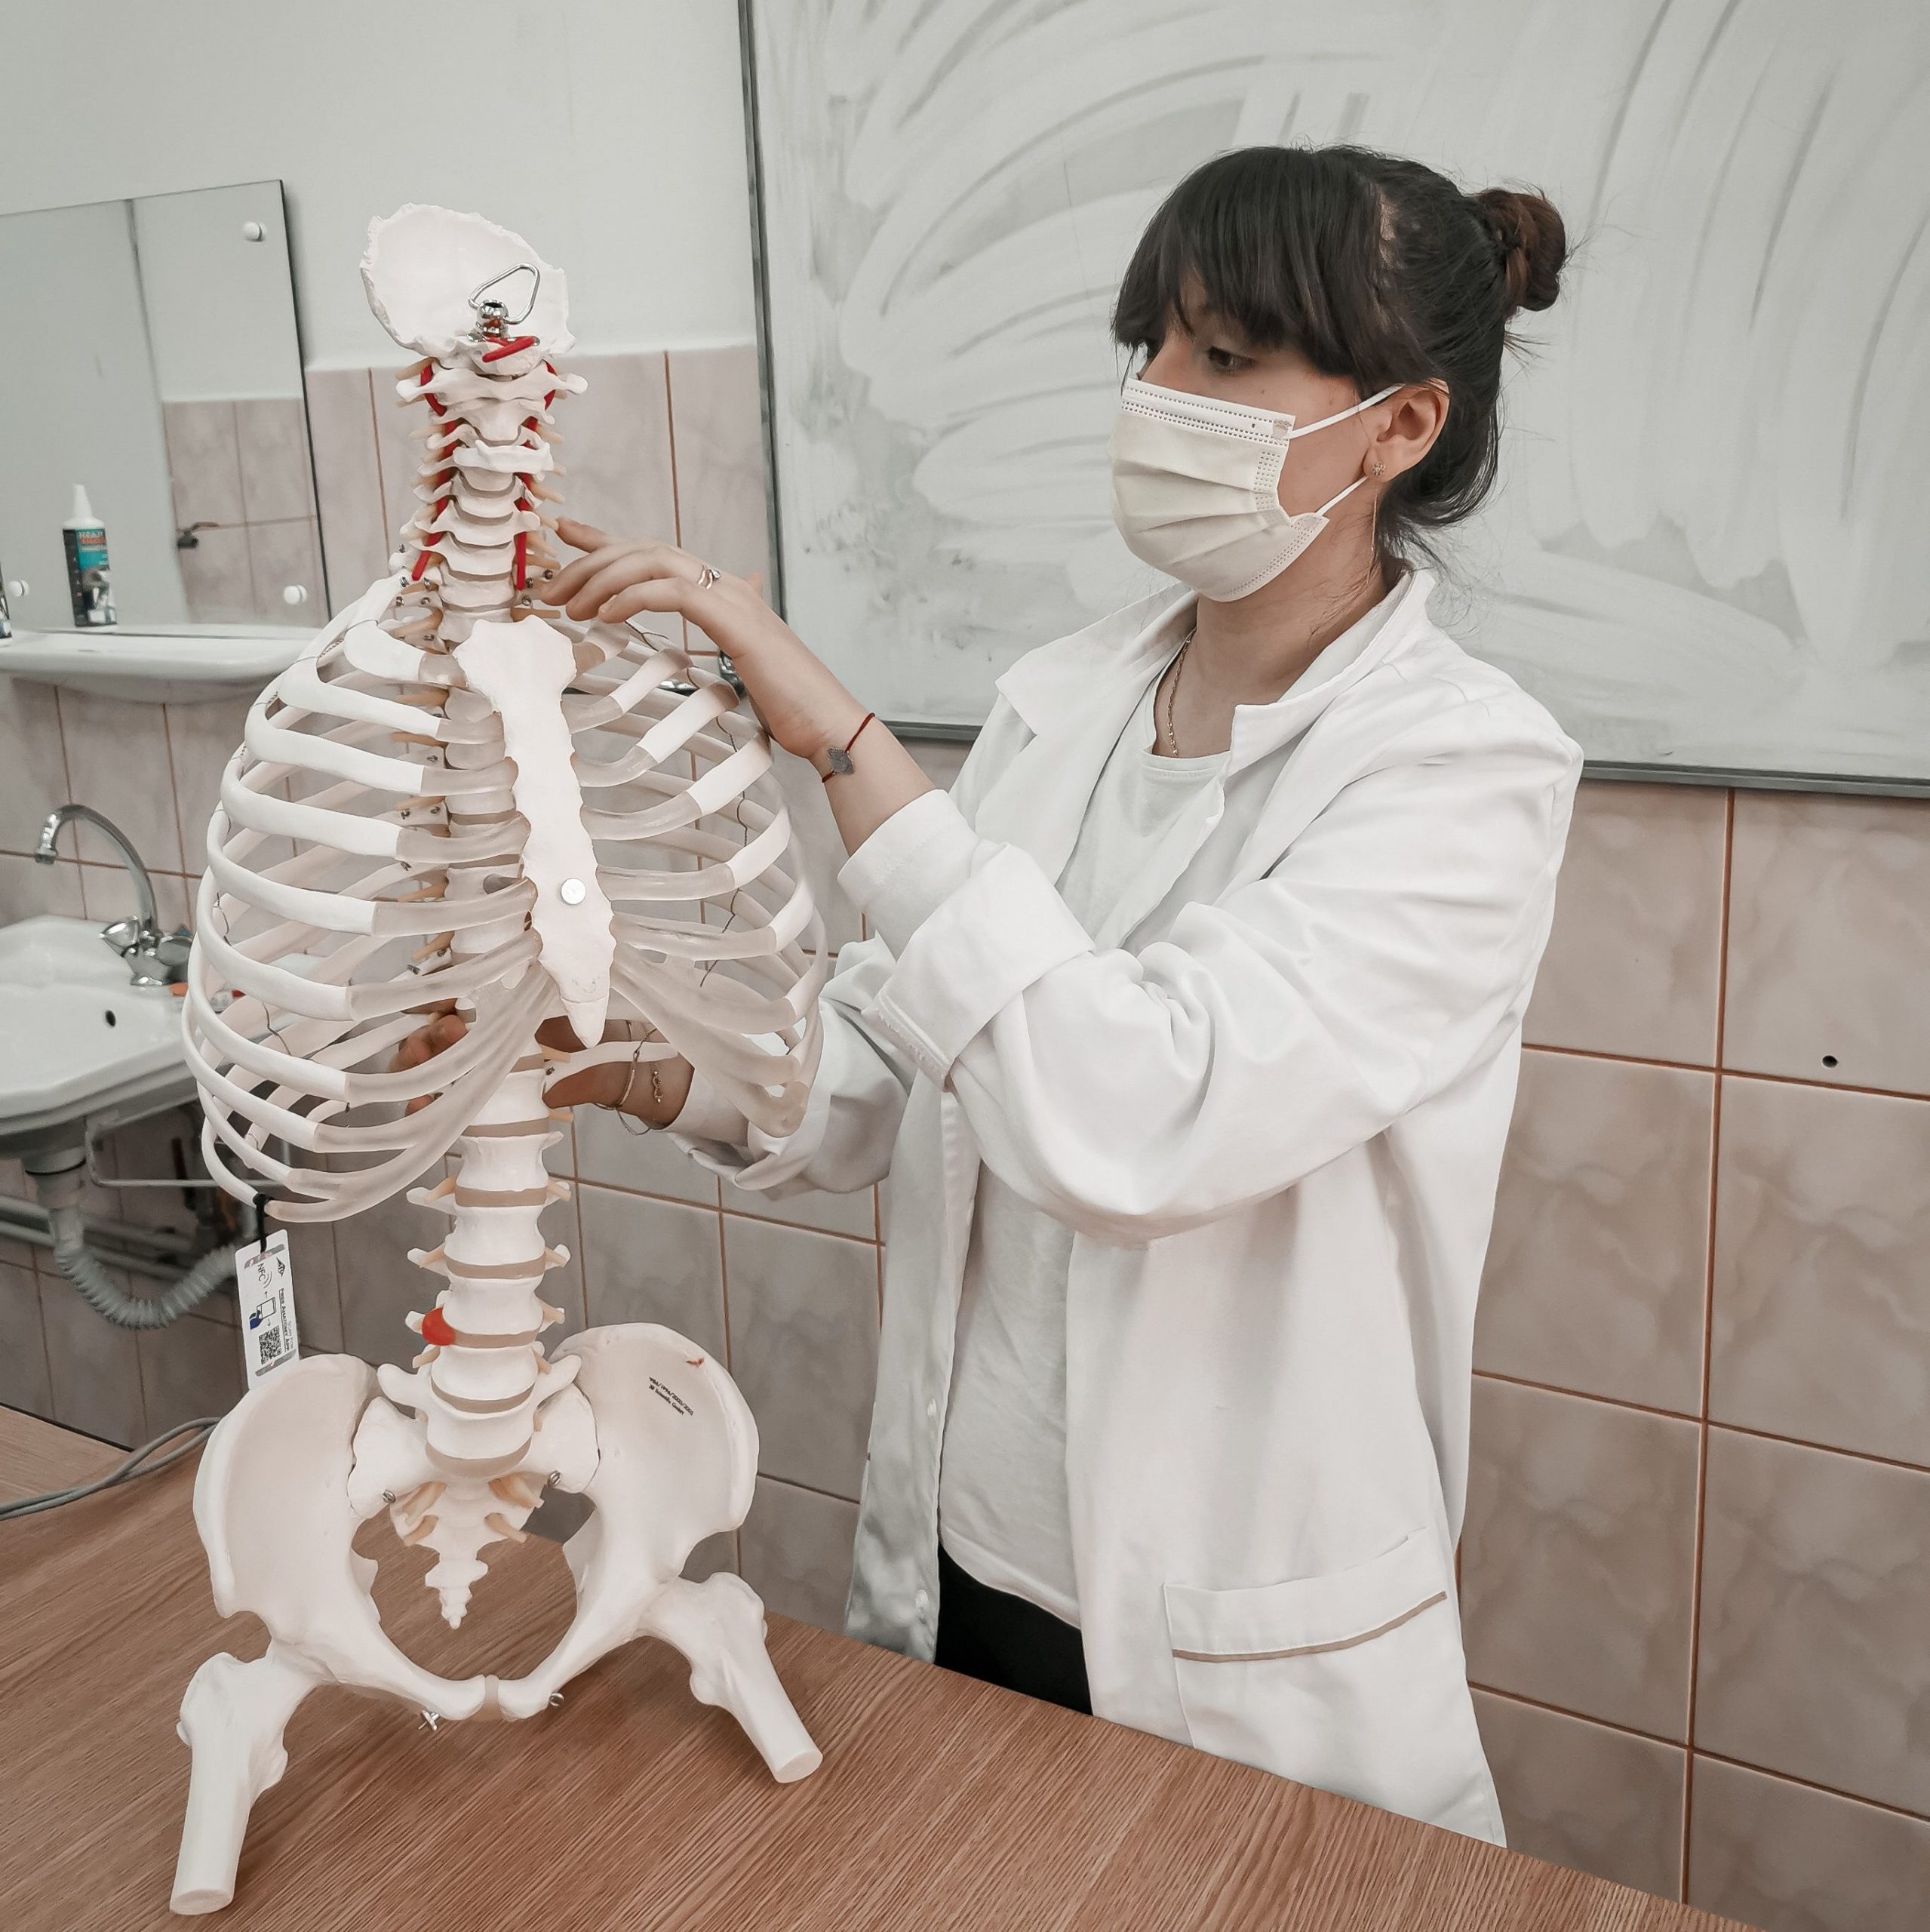 Doctor checking human skeleton